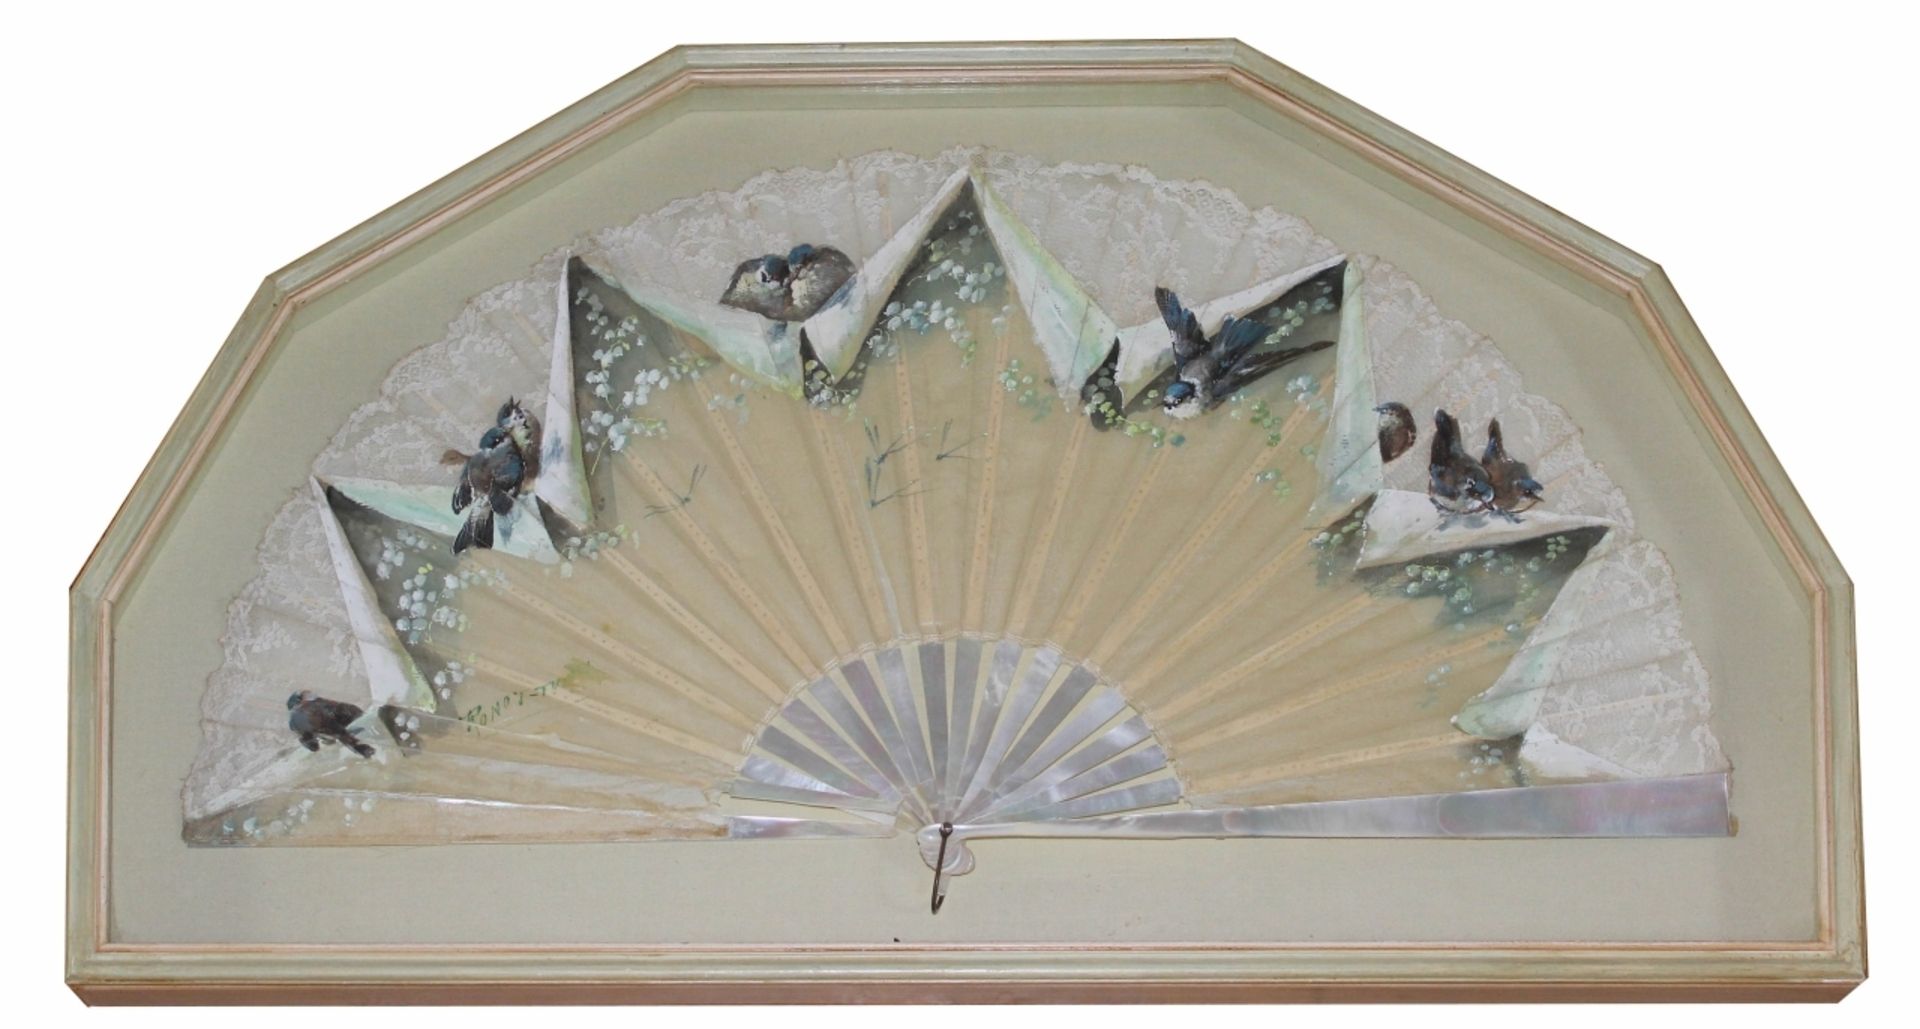 Fächer - Ronot Tutin (Frankreich 19./20.Jahrhundert) um 1900, bemalt mit Vogeldekor, verziert mit